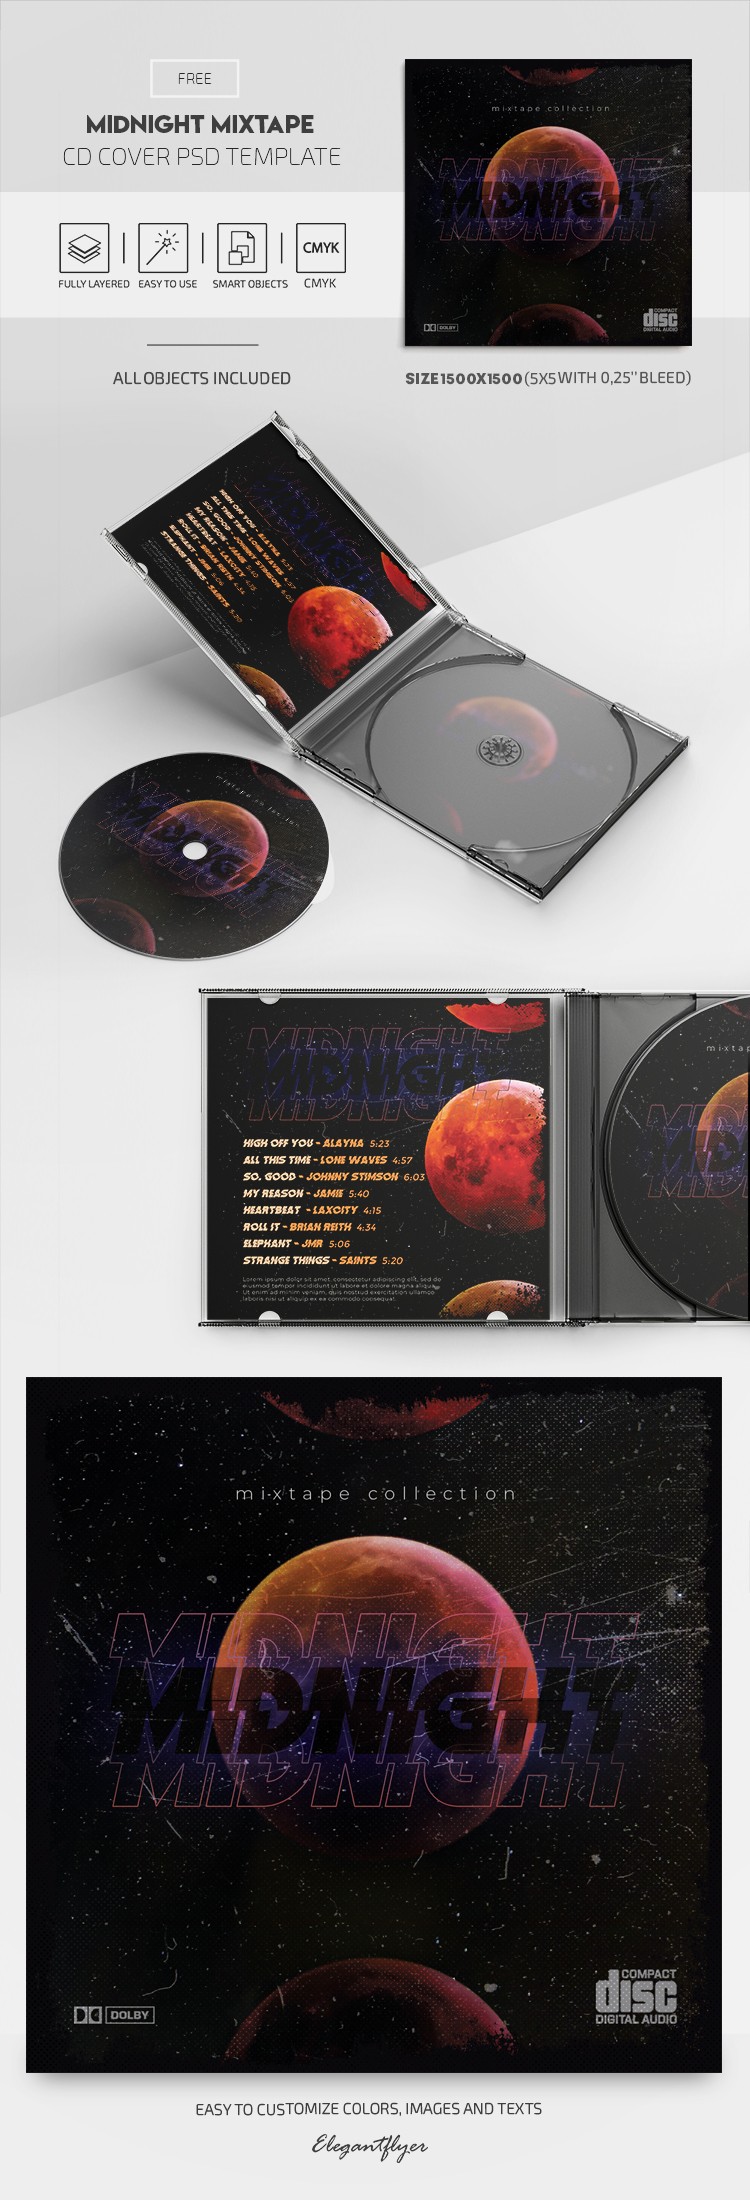 Midnight Mixtape CD Cover by ElegantFlyer